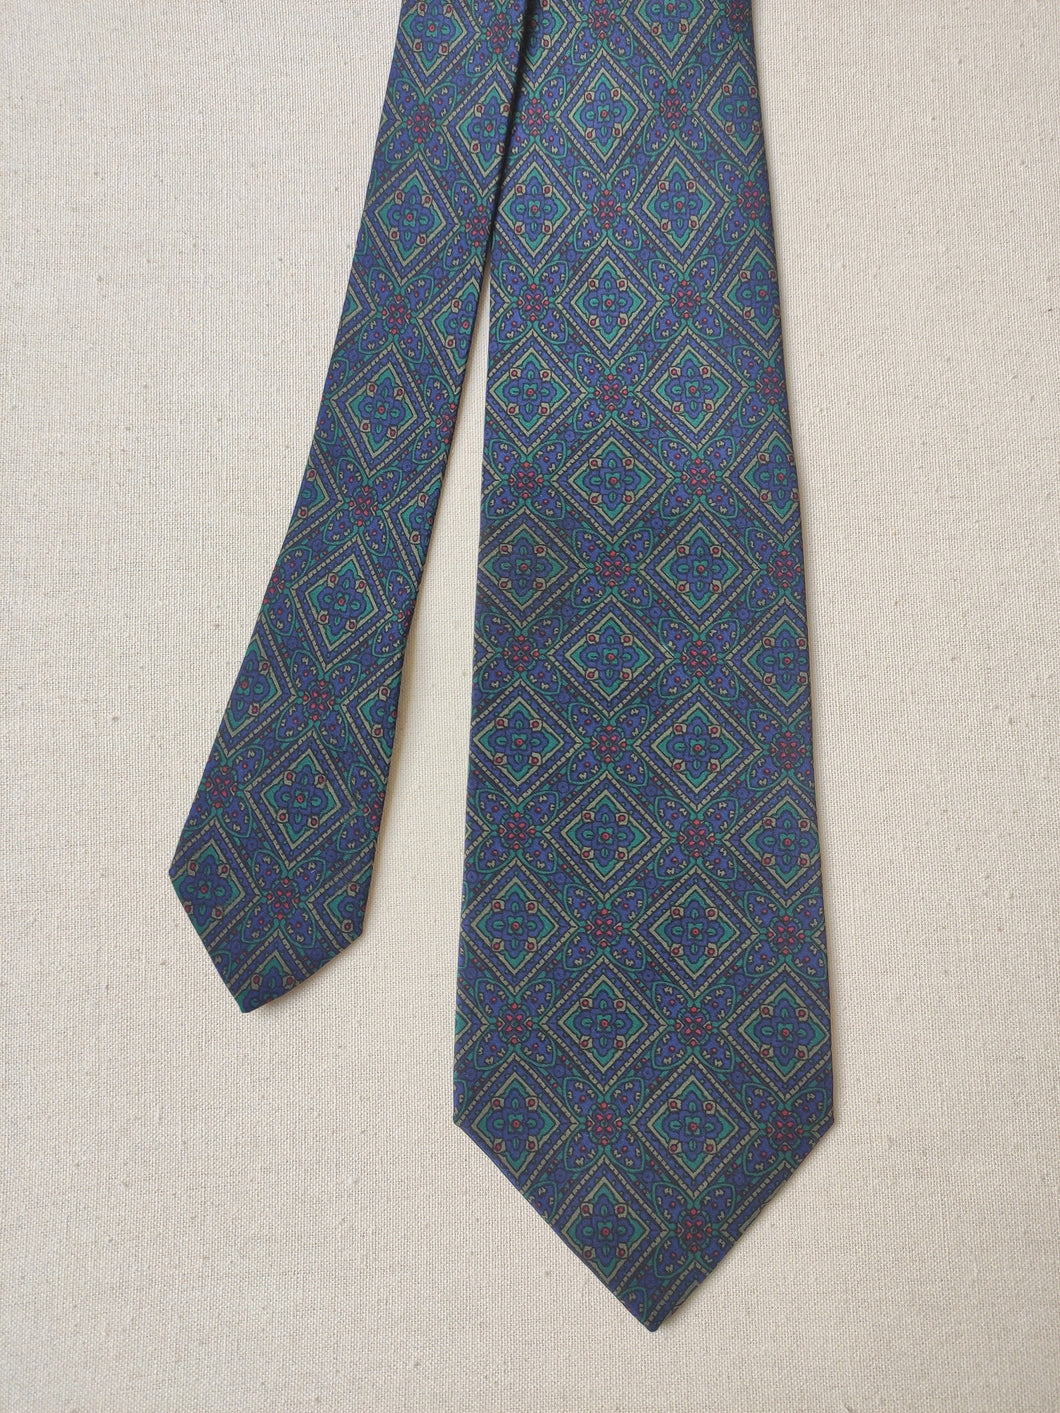 Vismara Milano cravate vintage à motif géométrique en soie Made in Italy